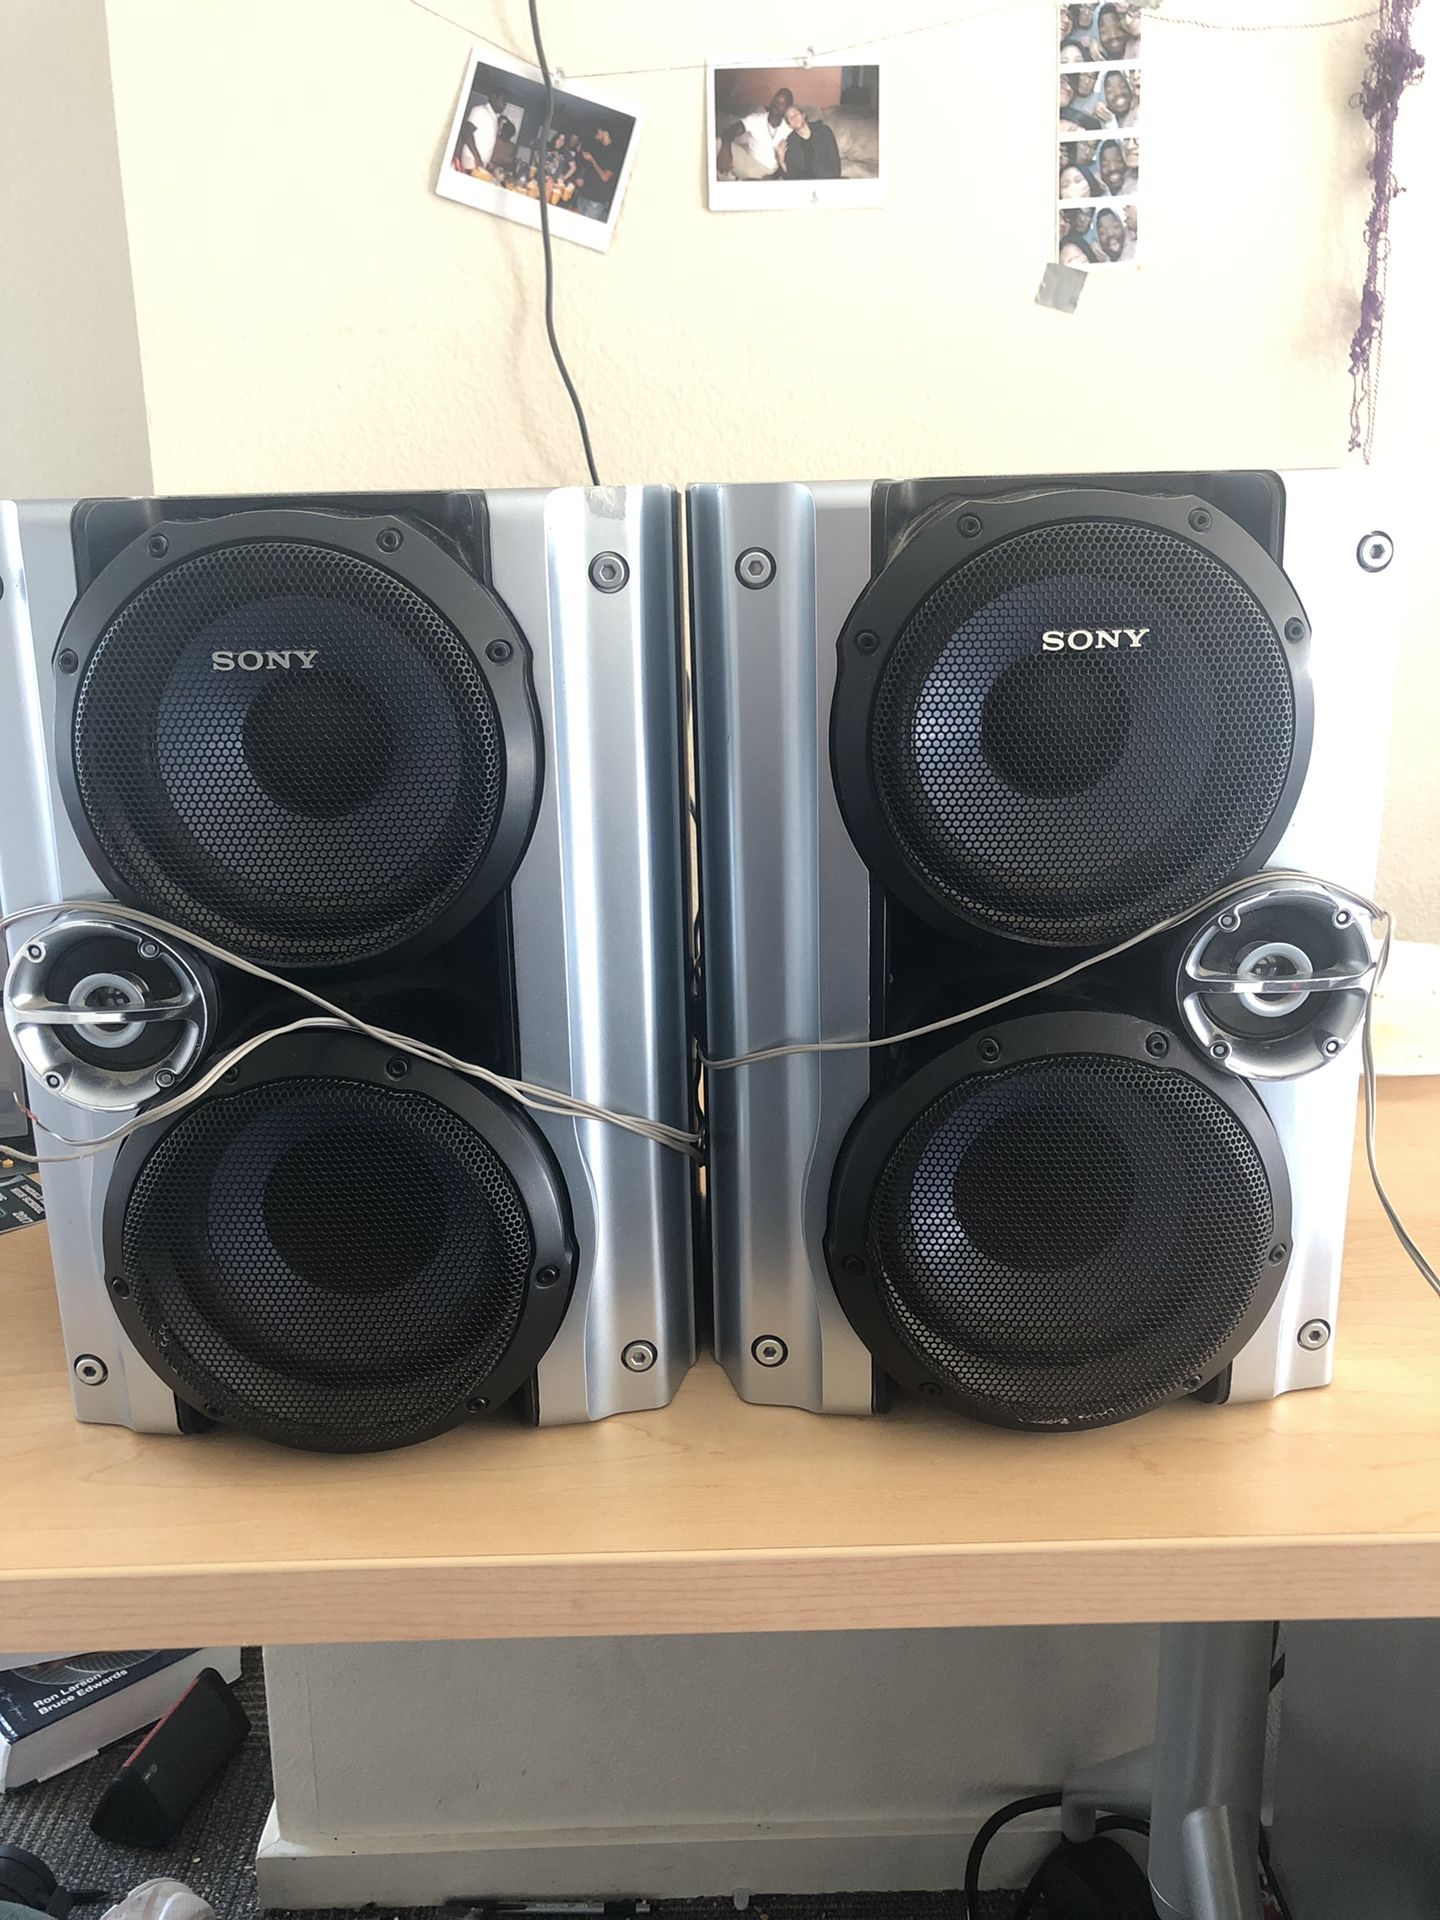 Sony surround speakers